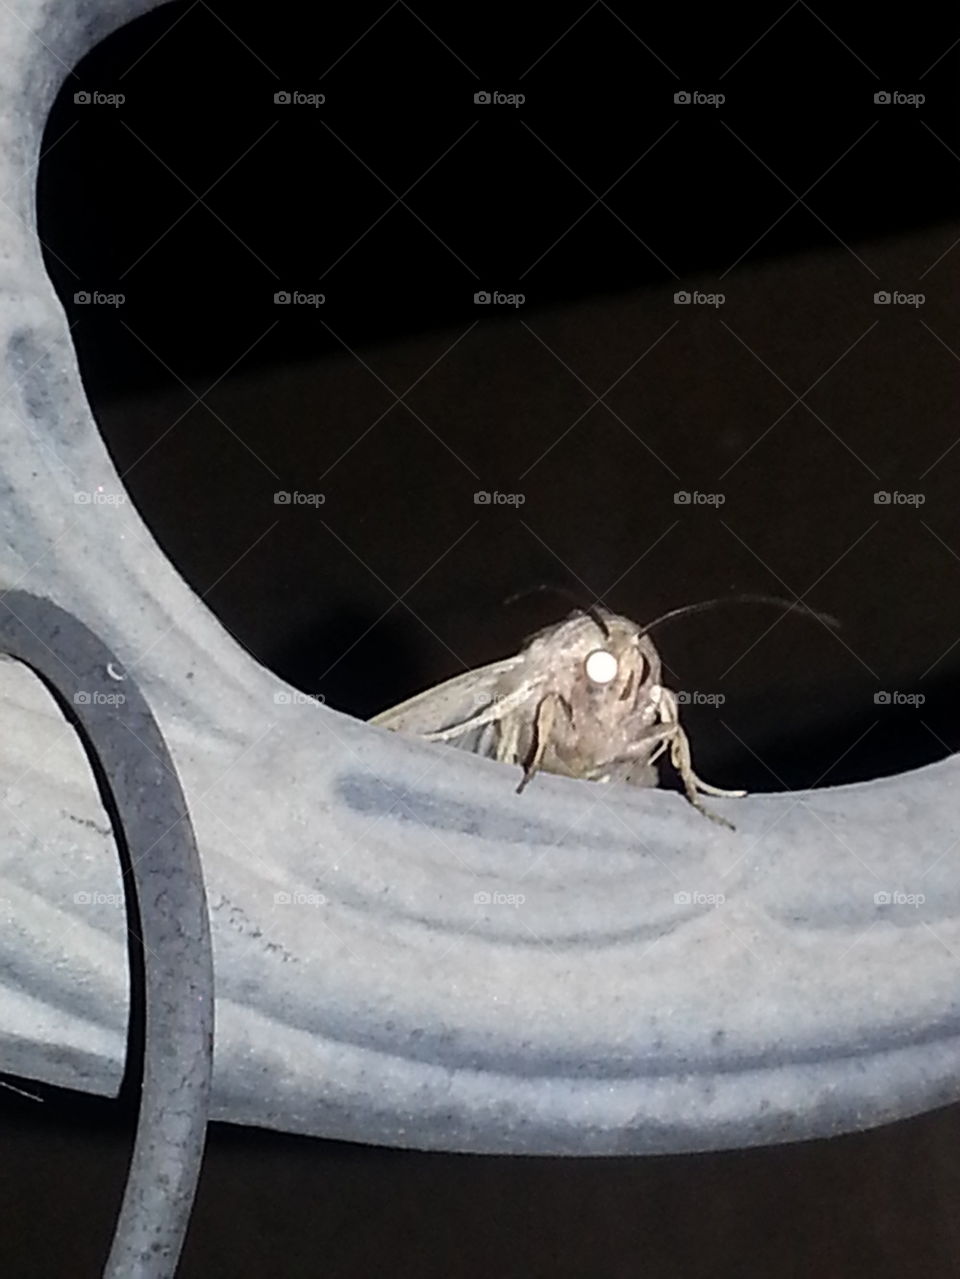 Moth at night